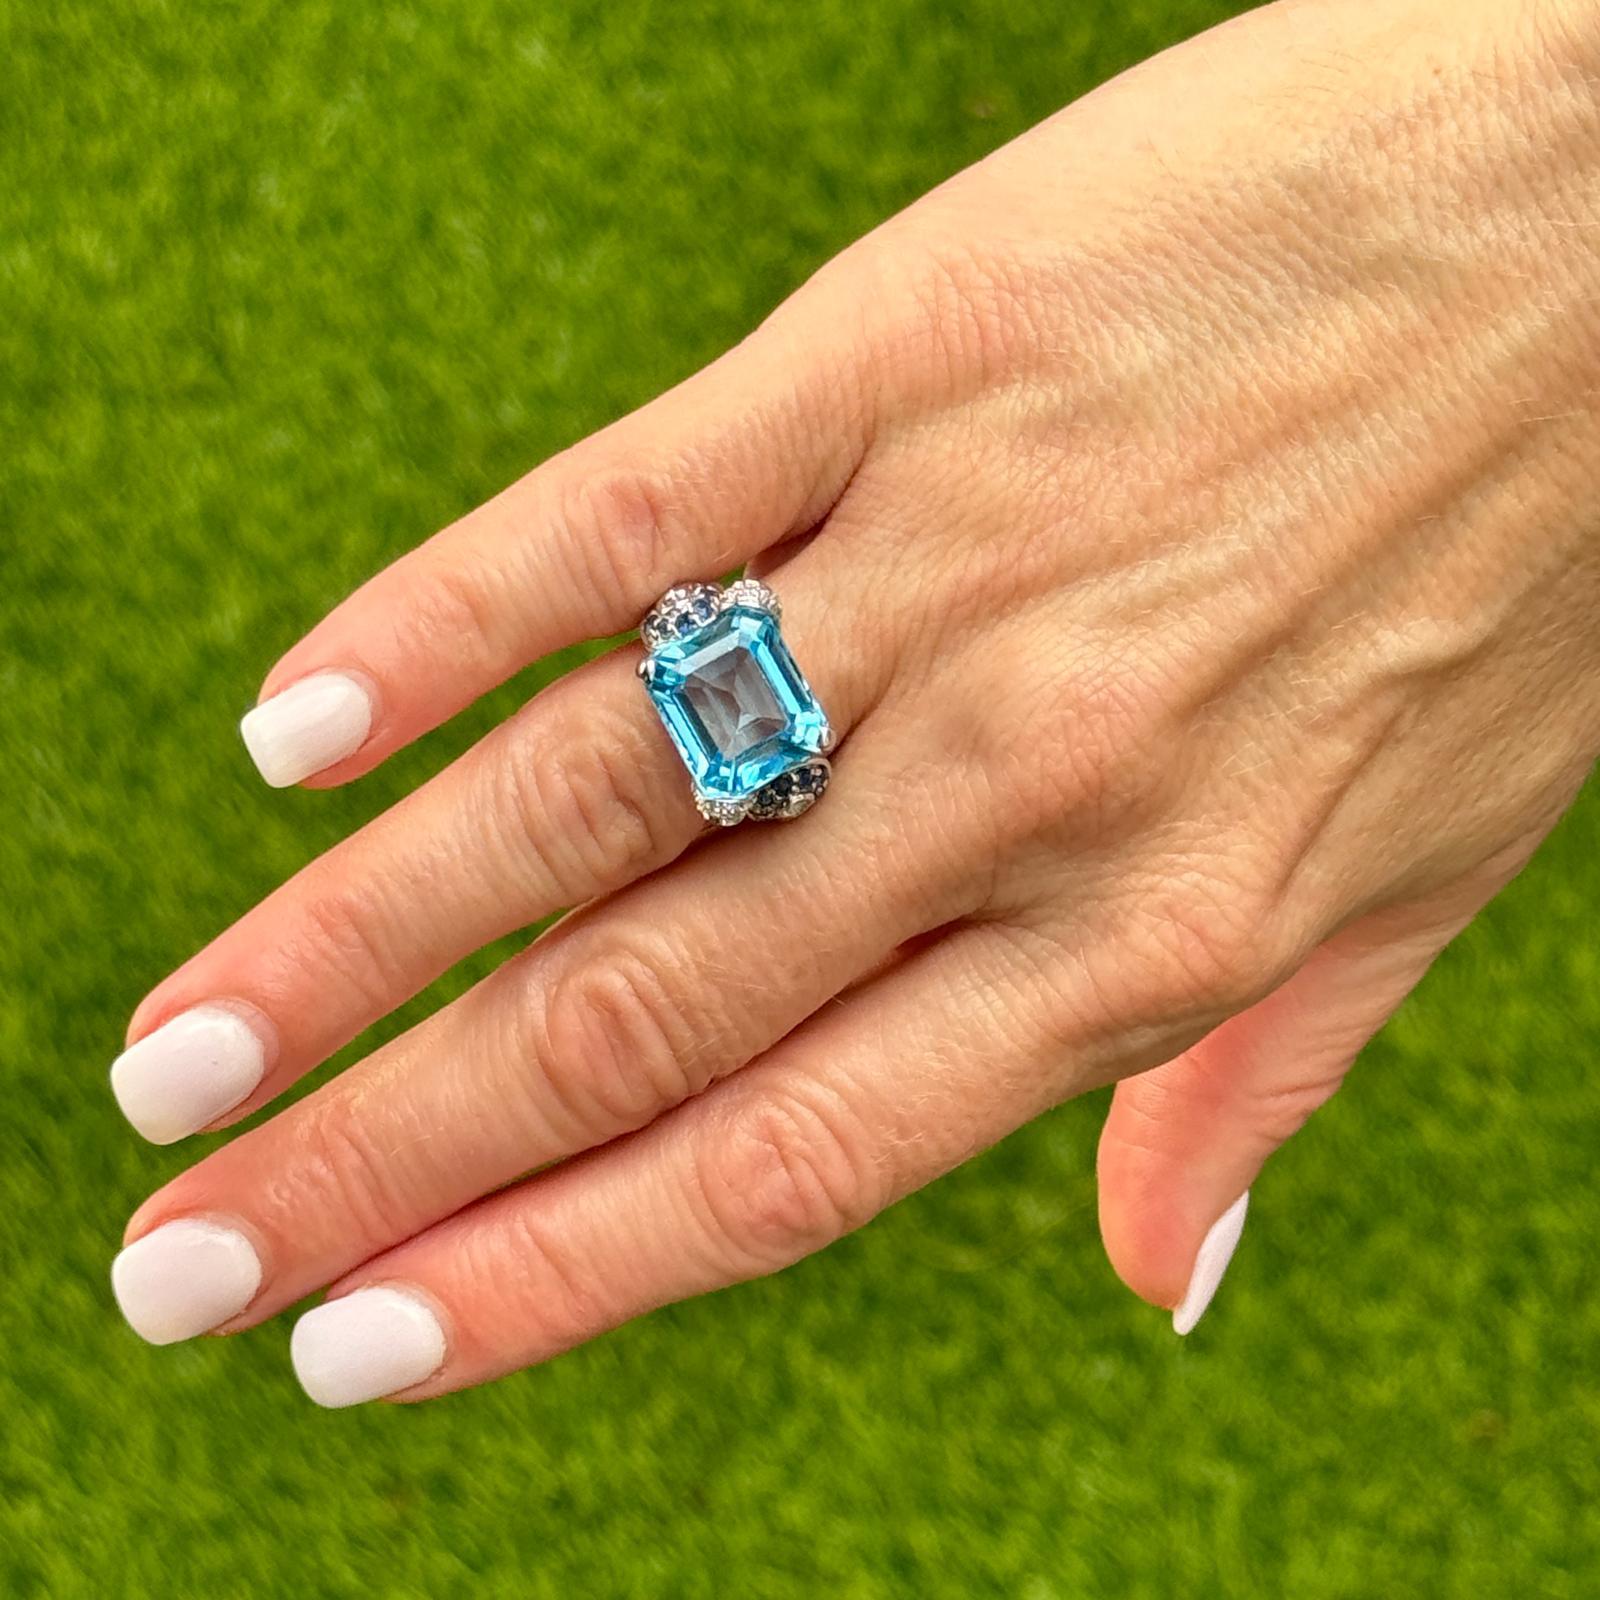 Moderner Ring mit blauem Topas, Saphir und Diamant aus 14 Karat Weißgold. Der Ring enthält einen Blautopas im Smaragdschliff mit einem Gewicht von etwa 8,0 Karat. Der Topas ist in Ost-West-Richtung gefasst und die Fassung ist mit blauen Saphiren und